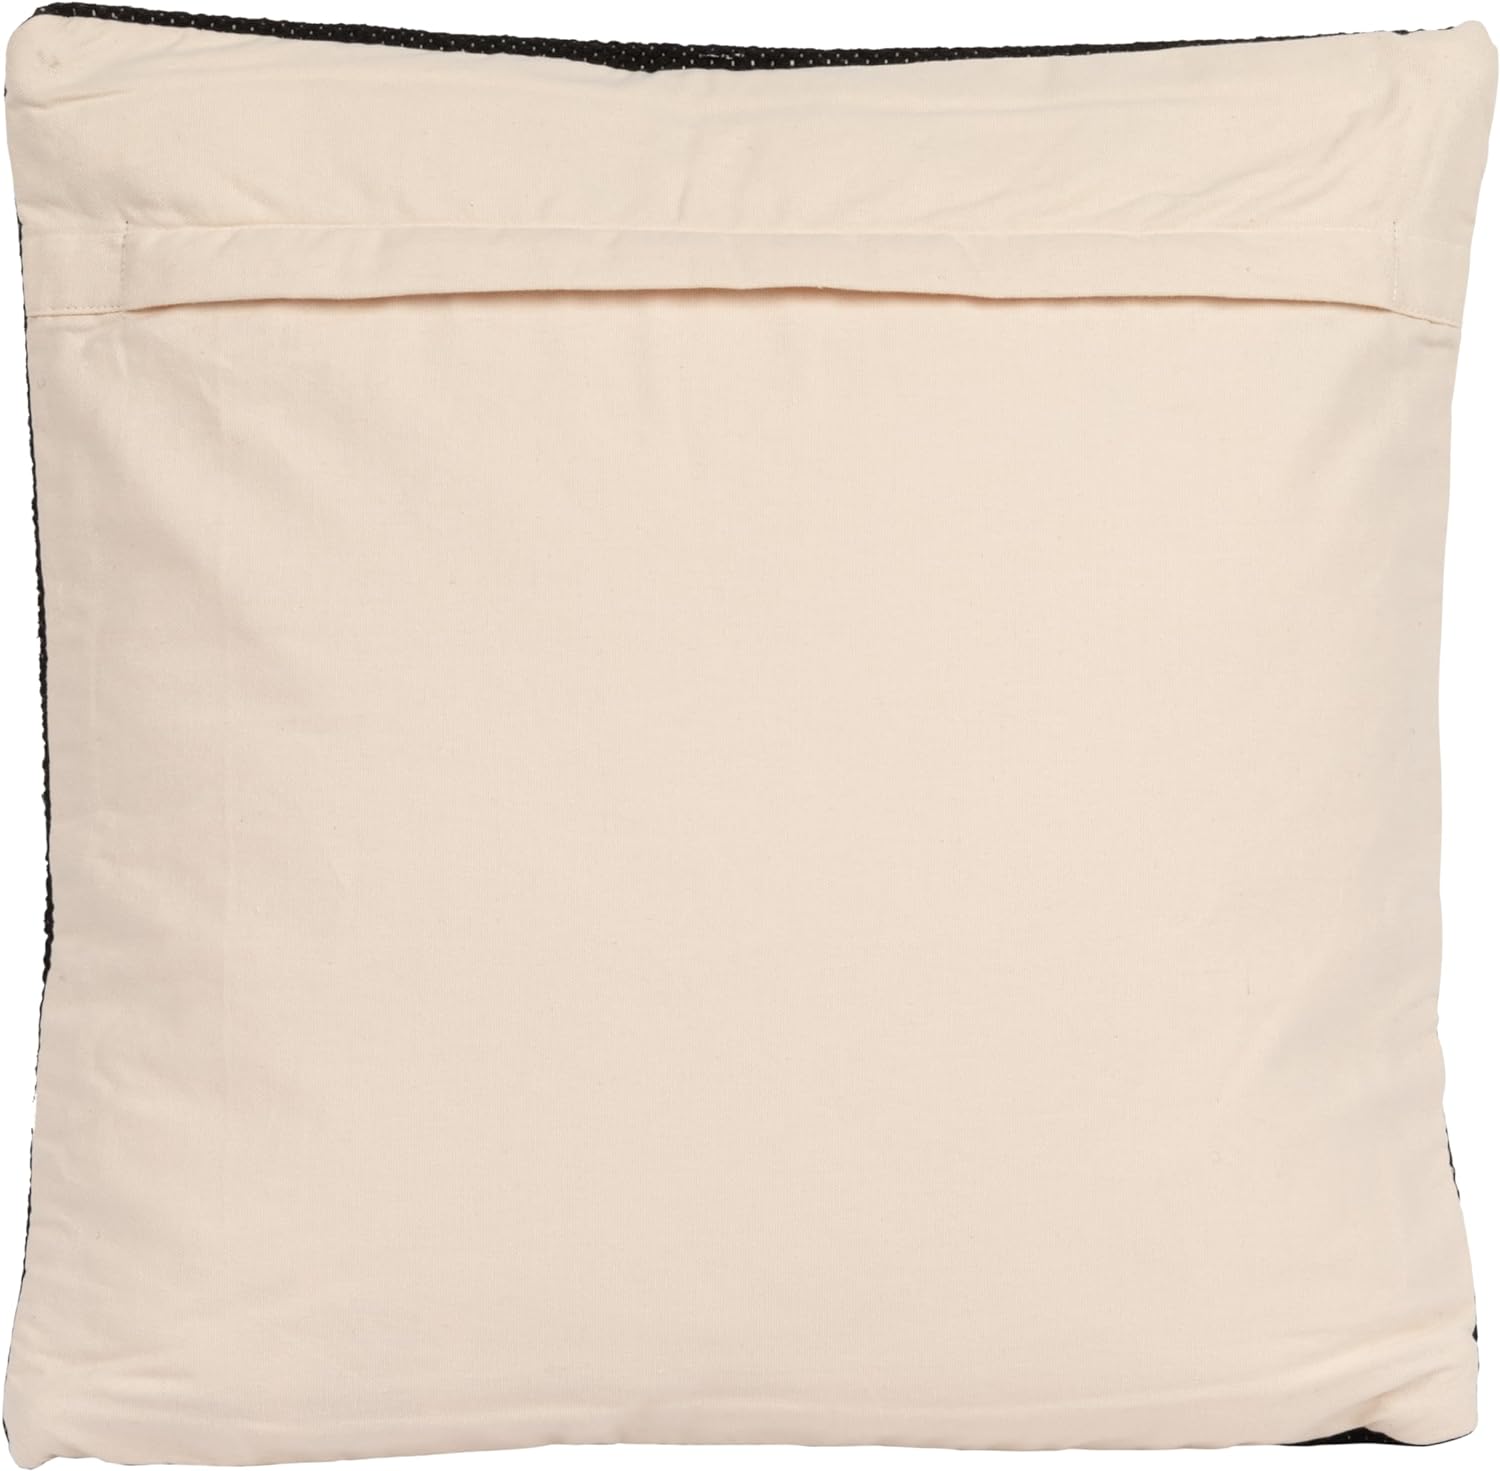 20" Wool Blend Pillow w/ Swiss Cross, Polyester Fill